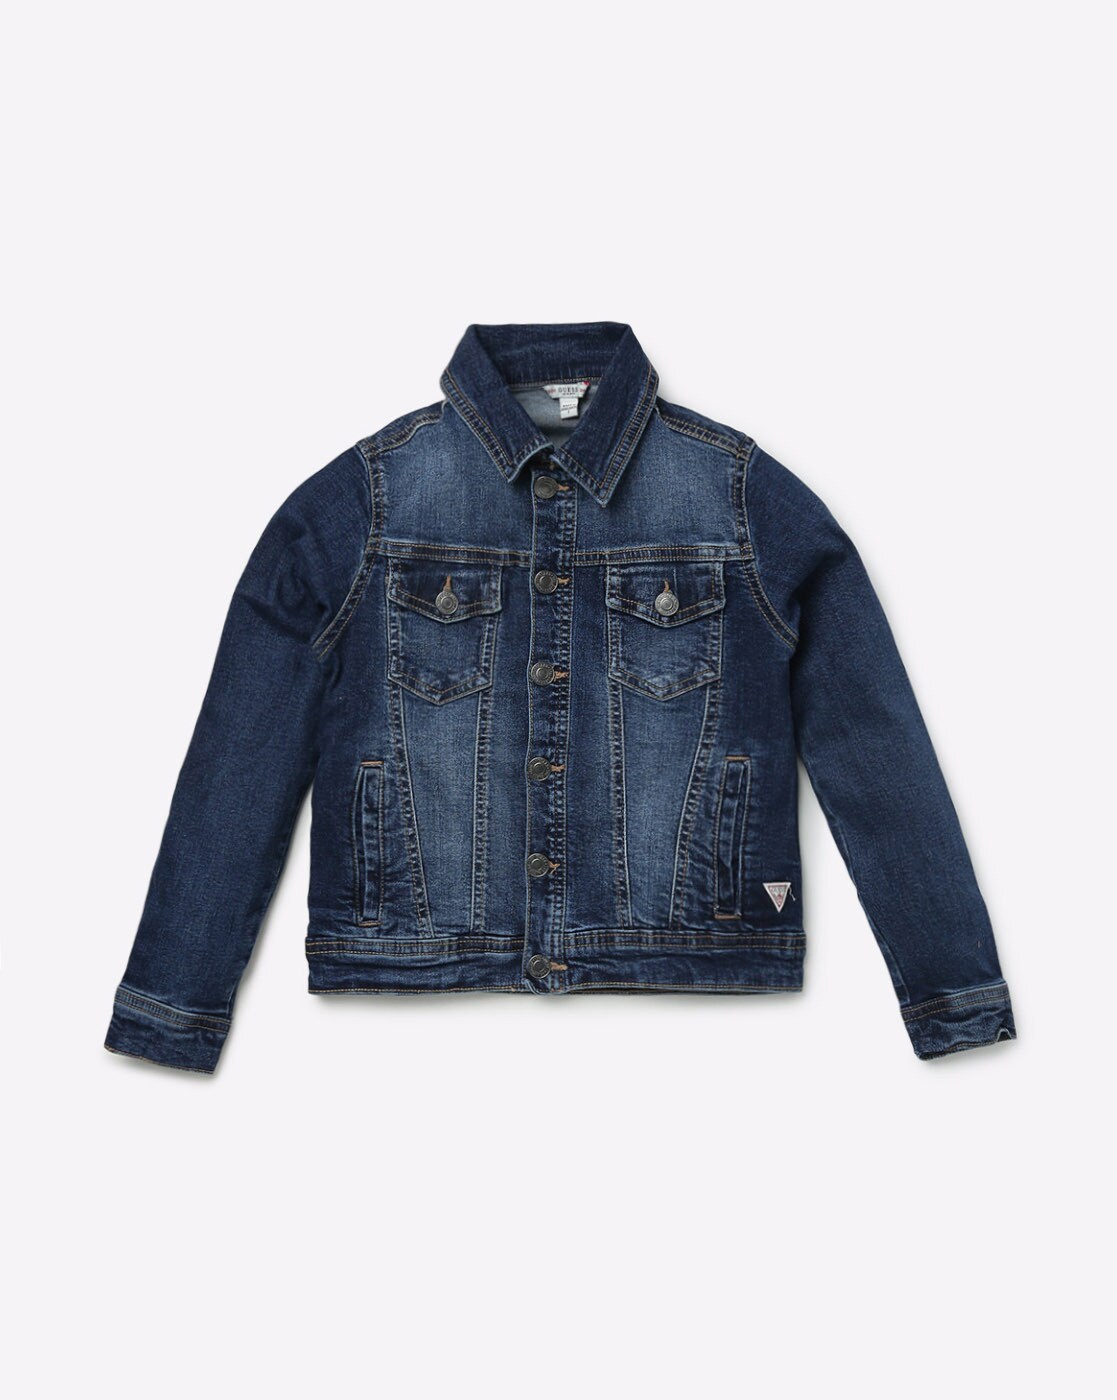 Children's Formal Jacket | Denim Outerwear Clothing | Denim Jeans Coat | Denim  Jackets - Jackets & Coats - Aliexpress